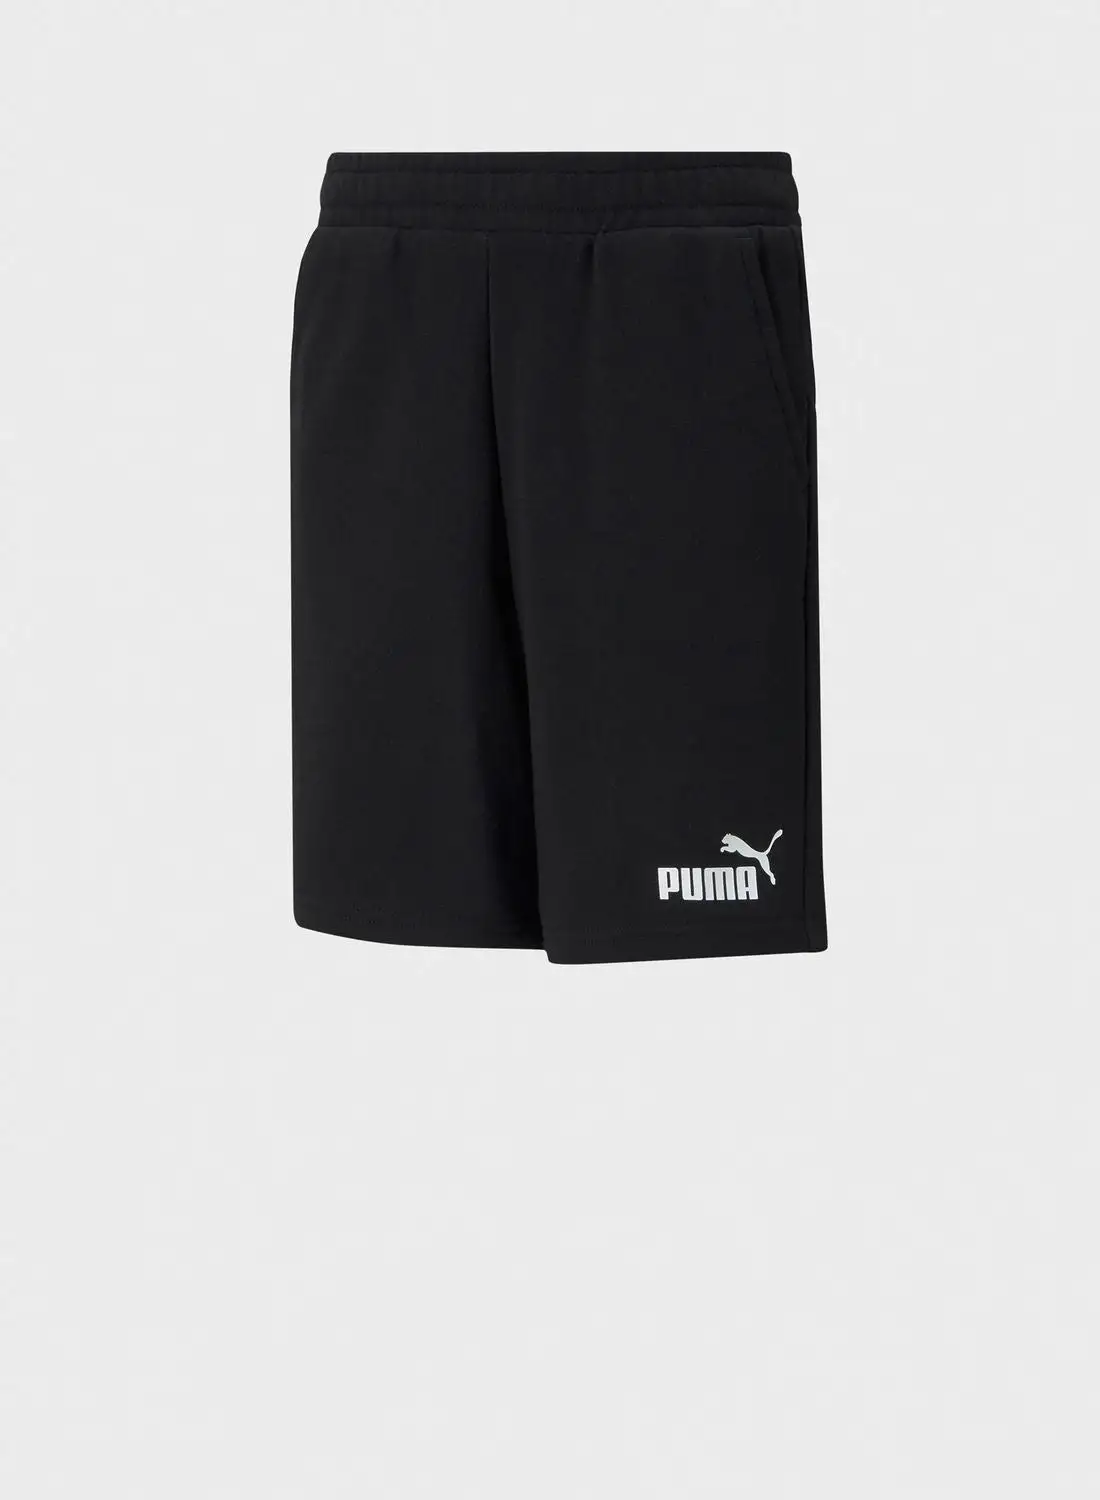 PUMA Youth Essential Shorts